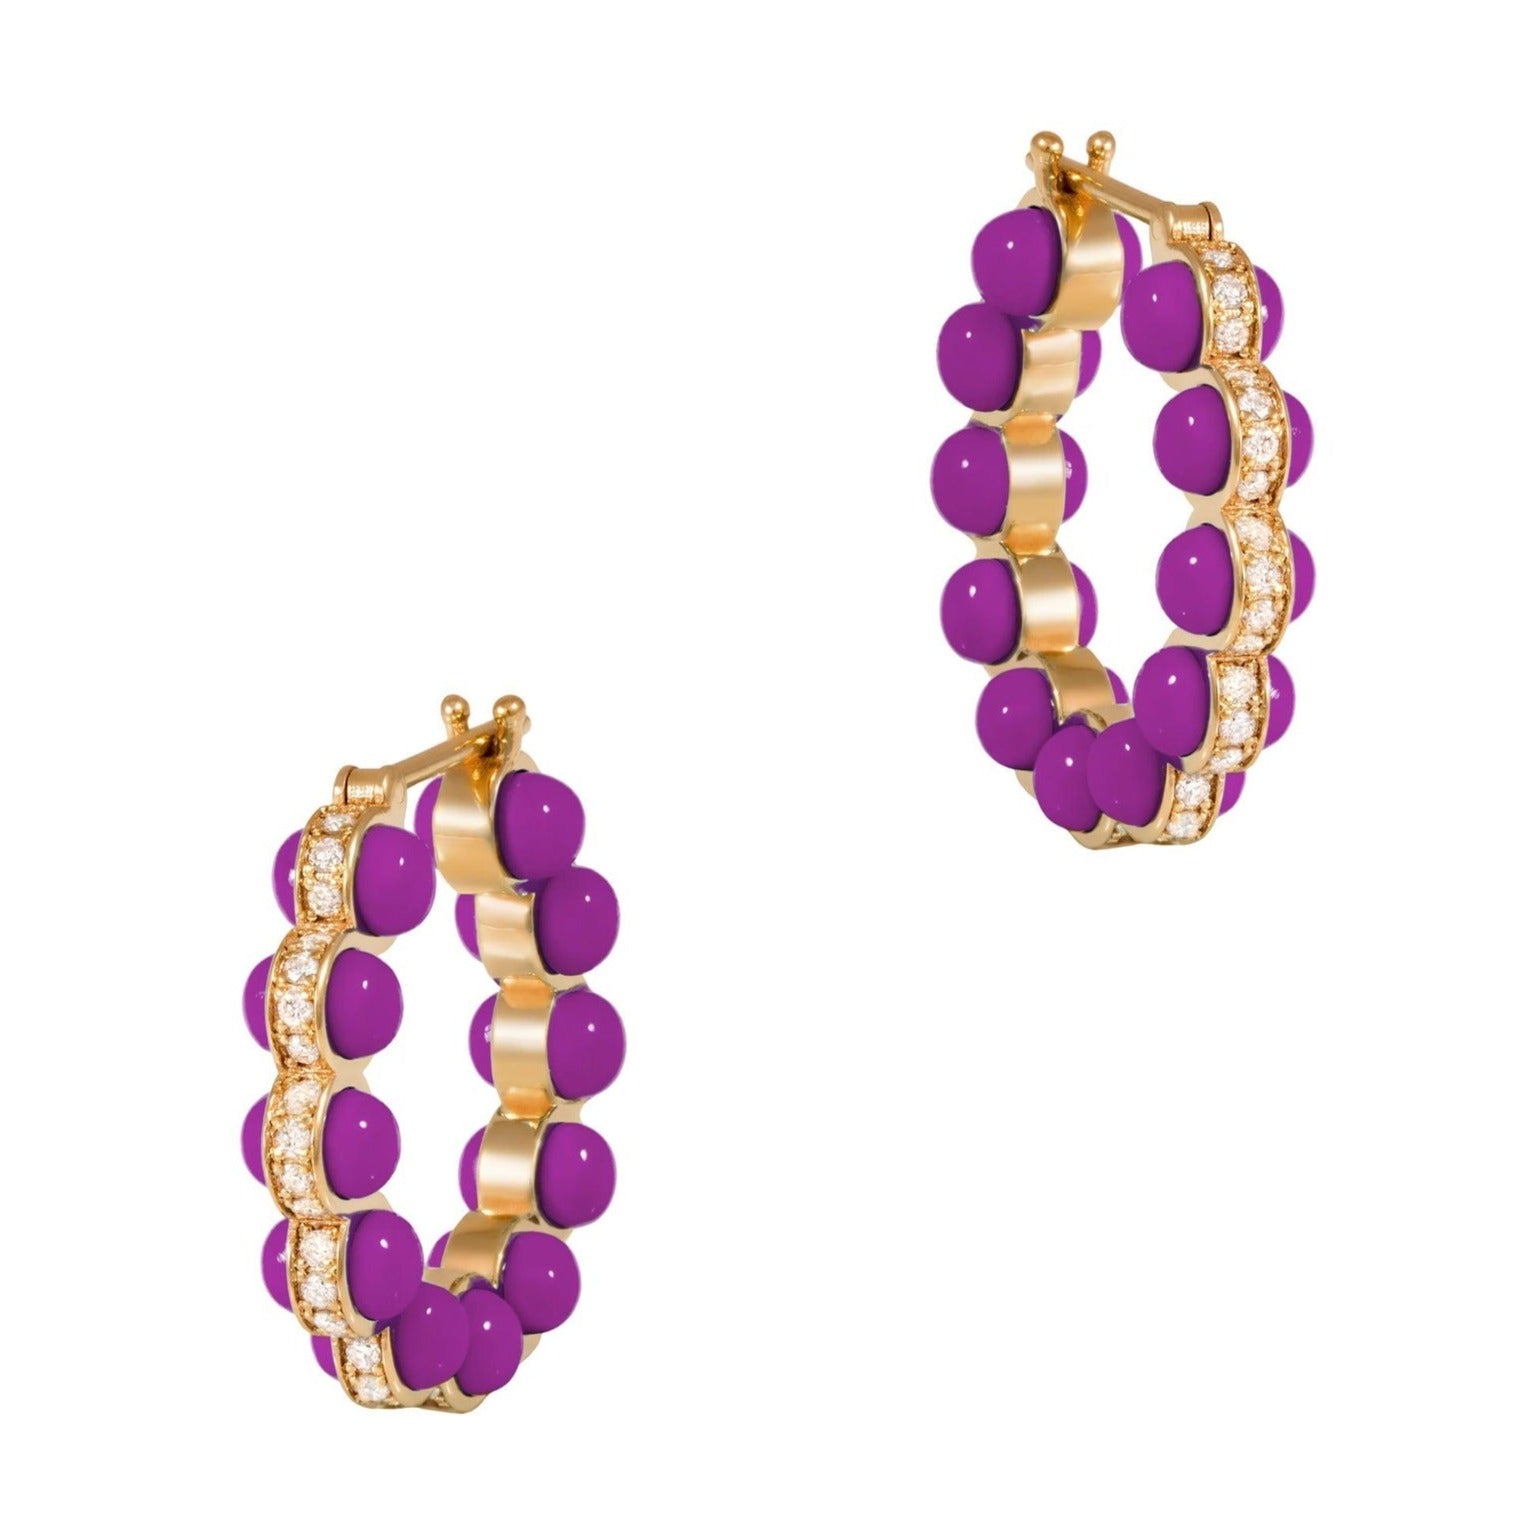 Purple Atom Earrings, Size Three Hoops Earrings Latelier Nawbar   